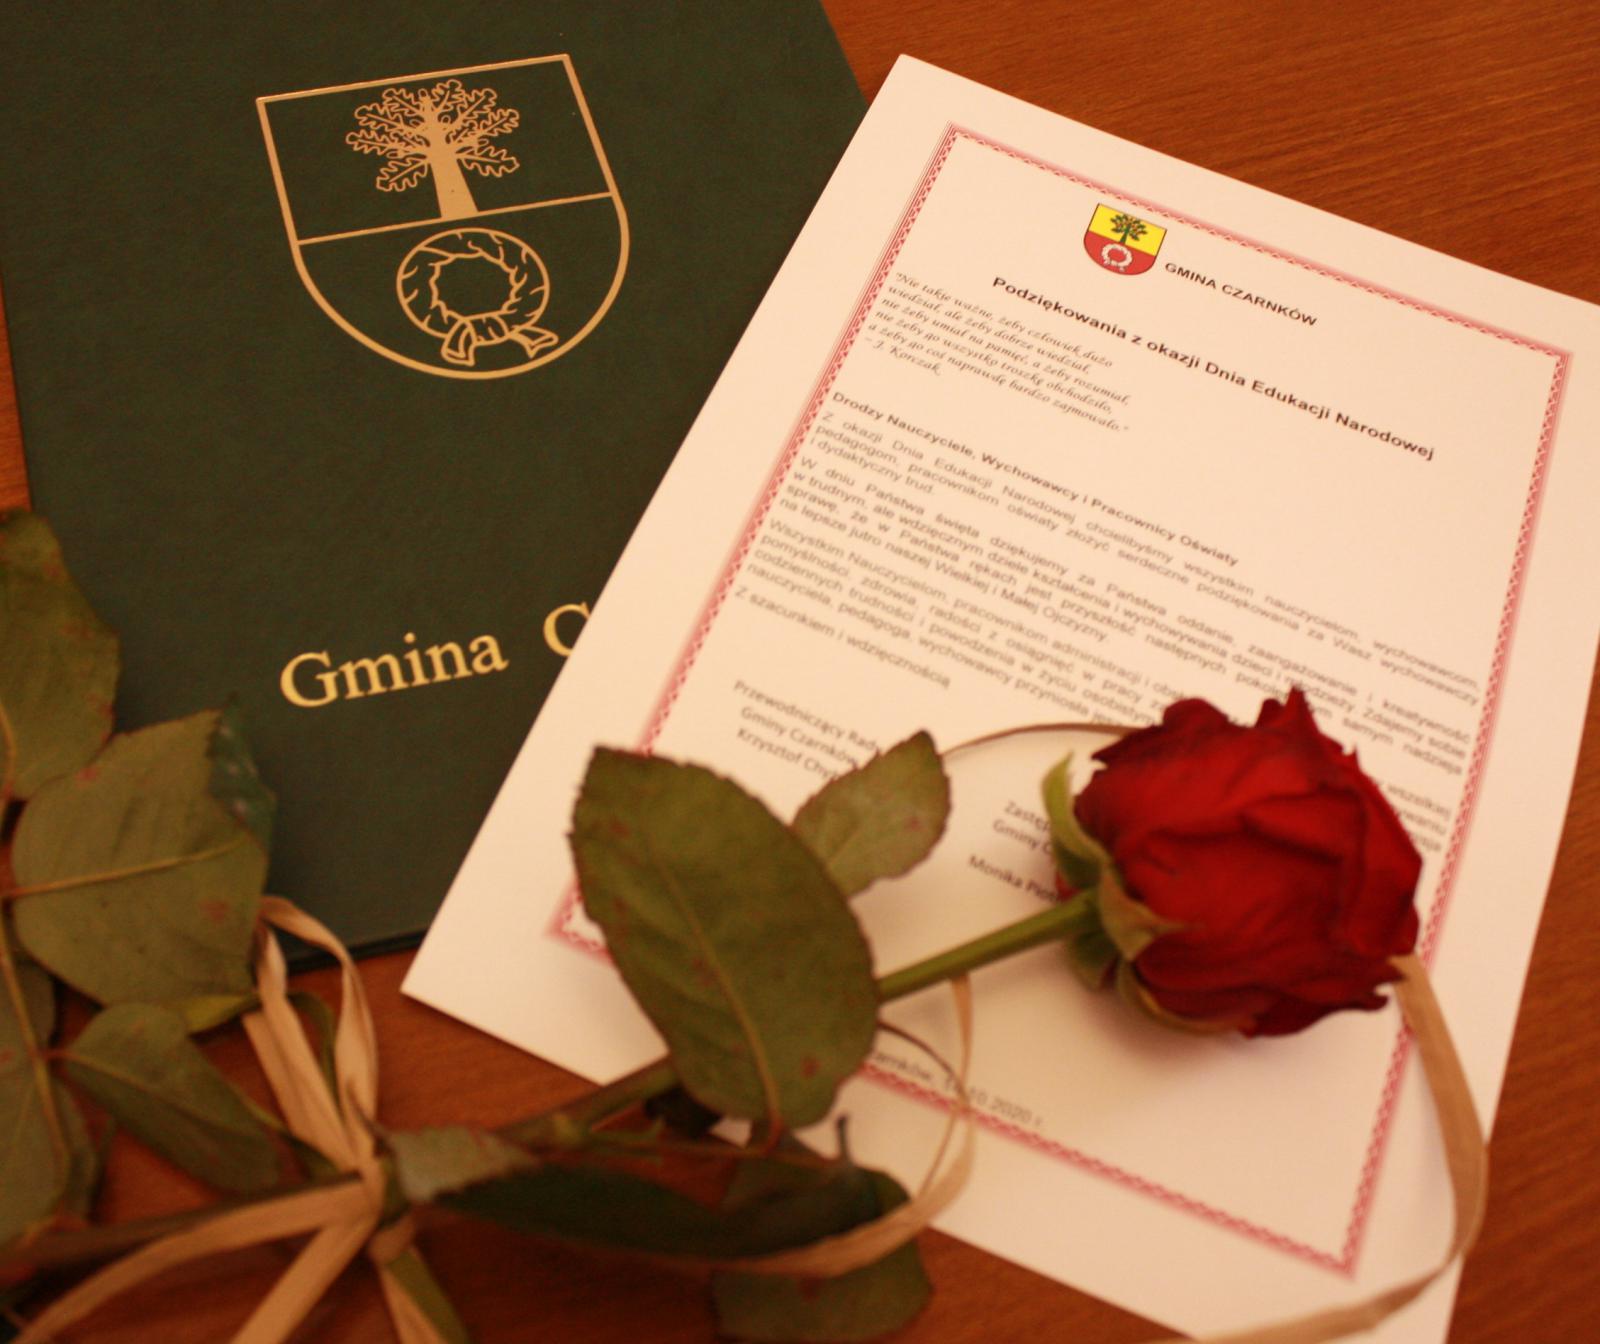 Zdjęcie przedsatwiające okłądkę dyplomu, dyplom i czerwoną różę